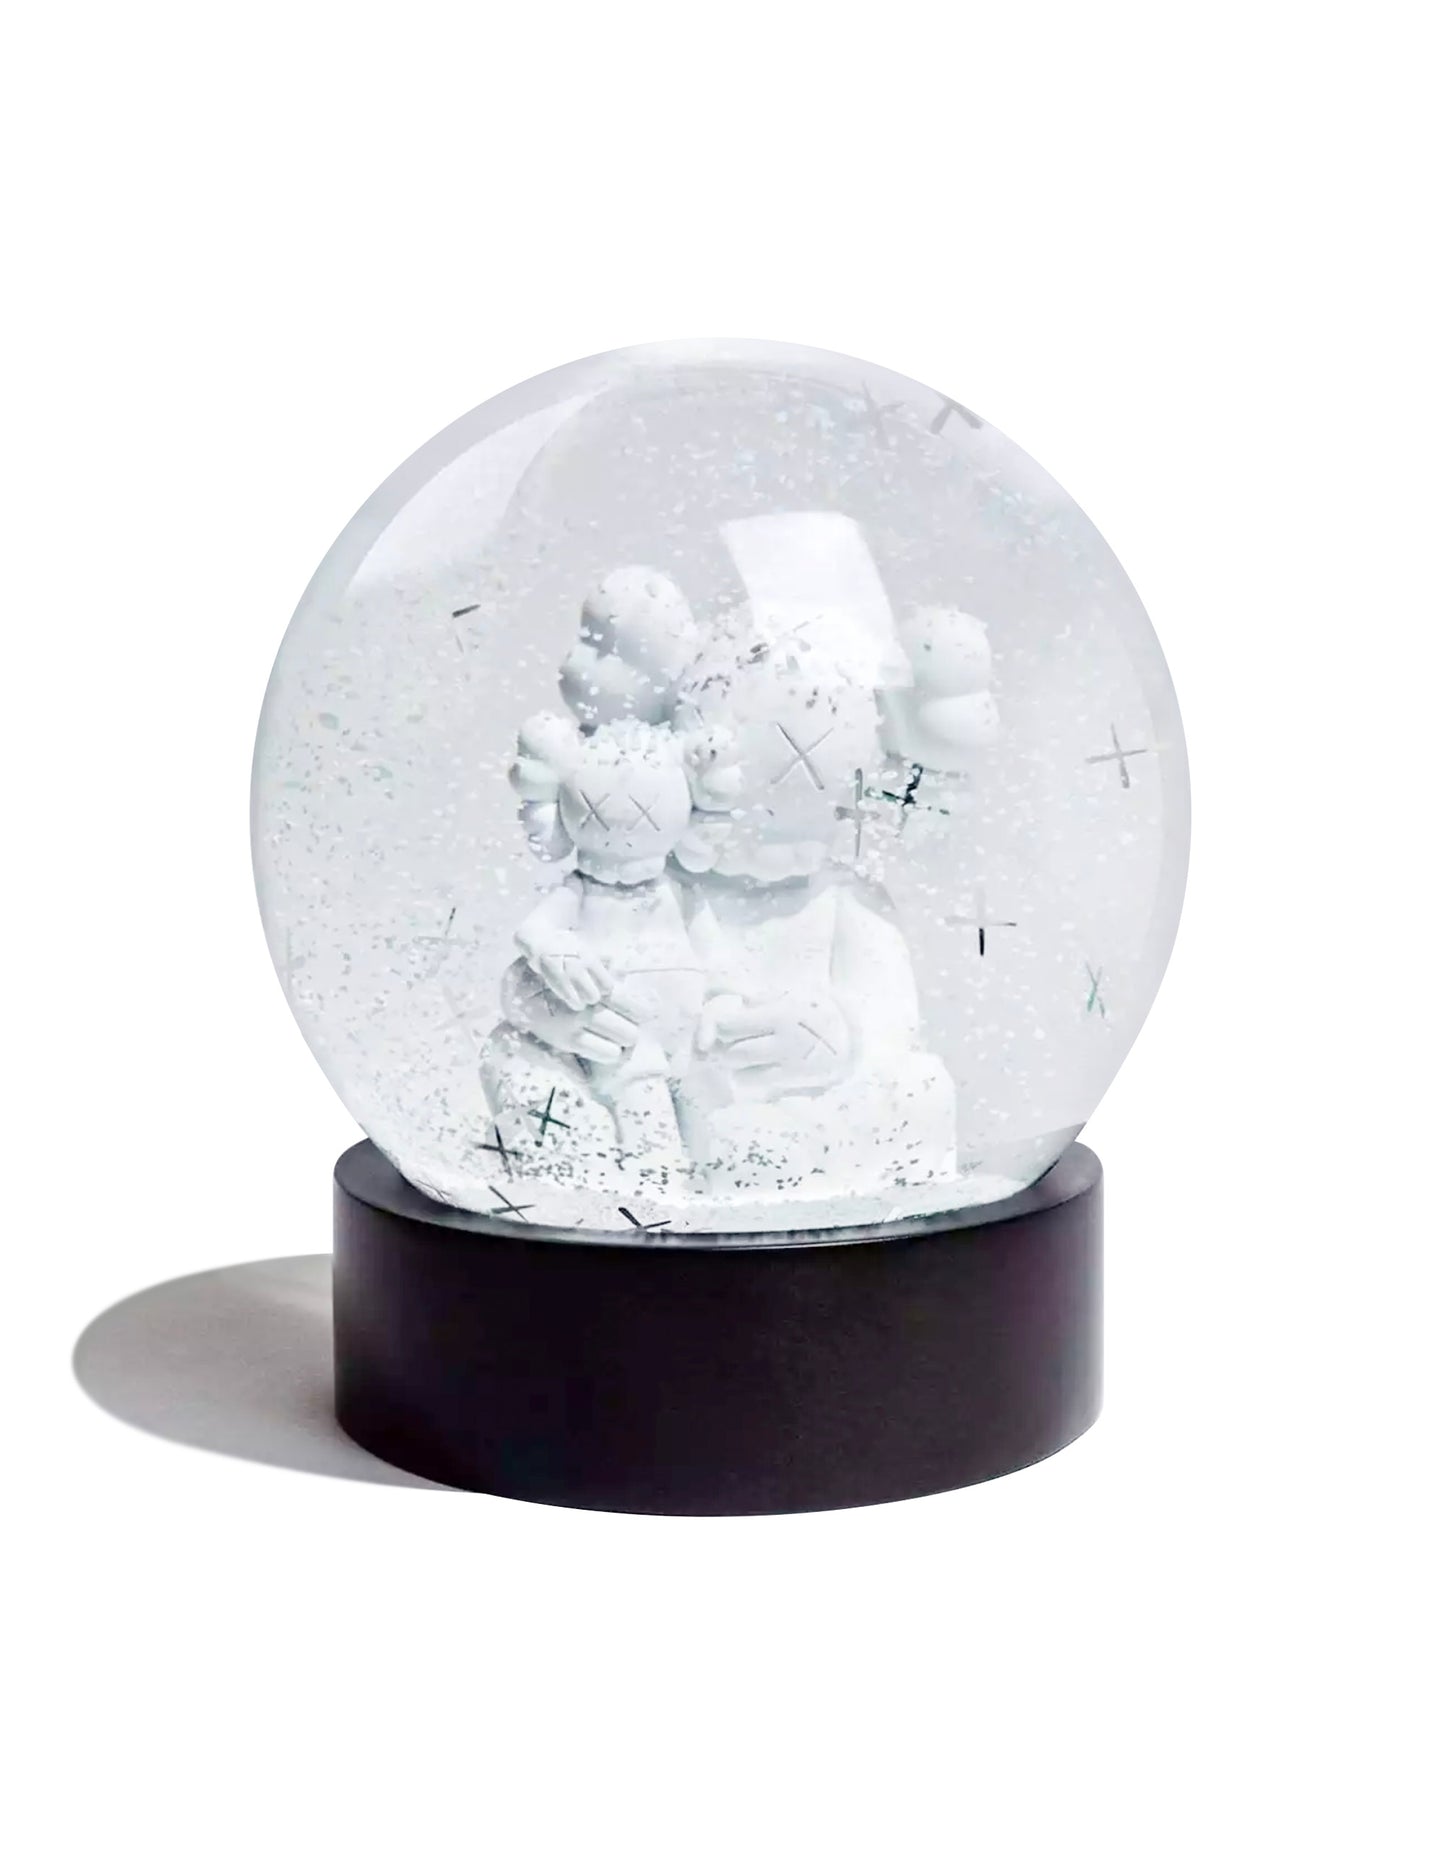 KAWS - Snow Globe, 2022